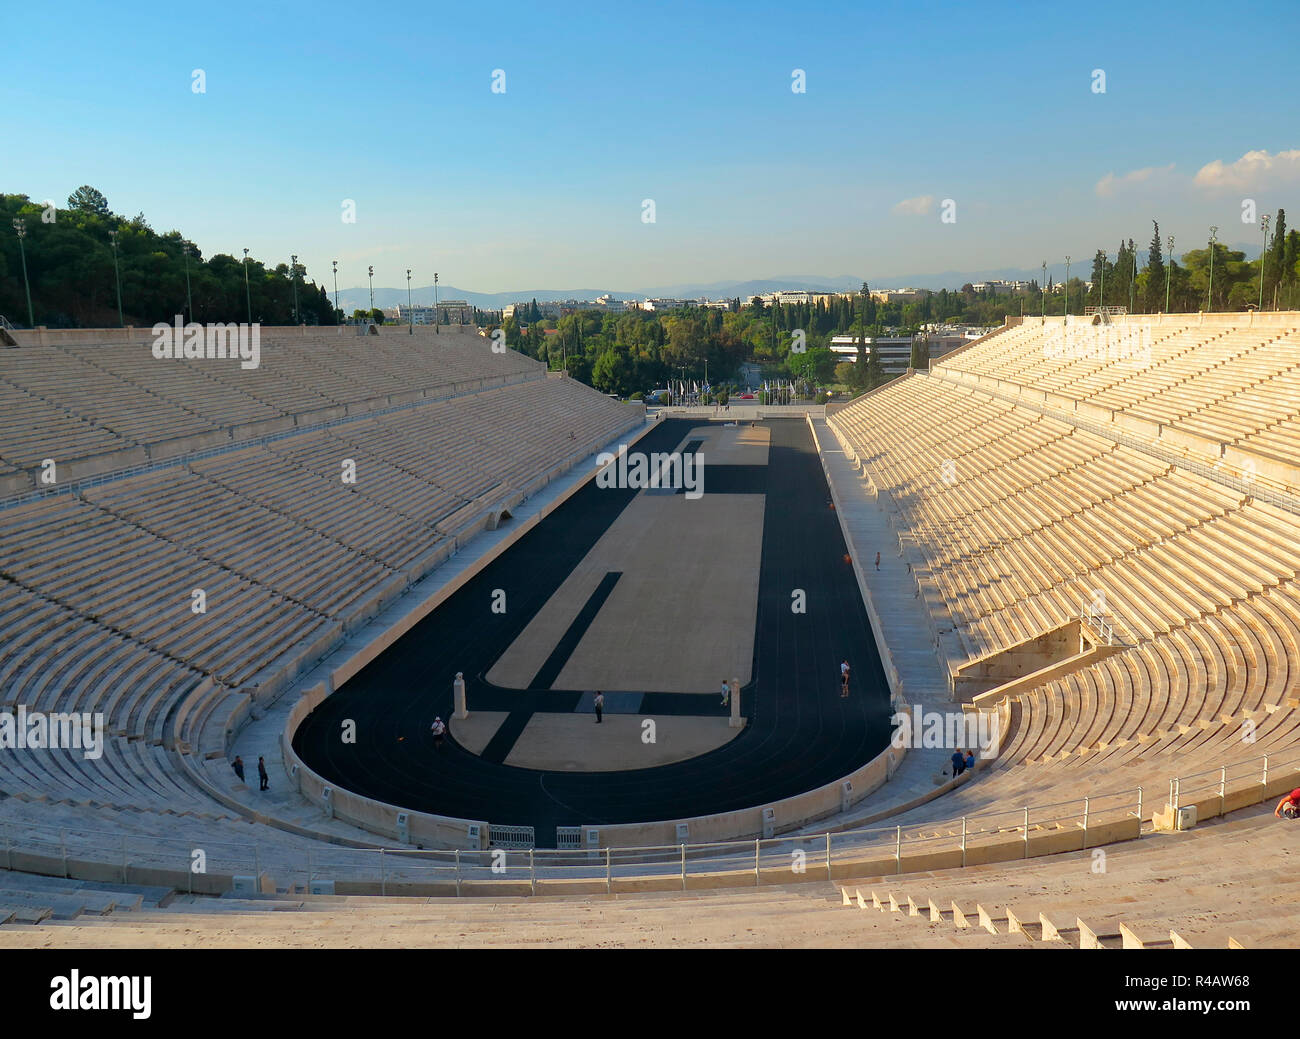 Panathinaiko-Stadion, Athen, Griechenland Foto de stock